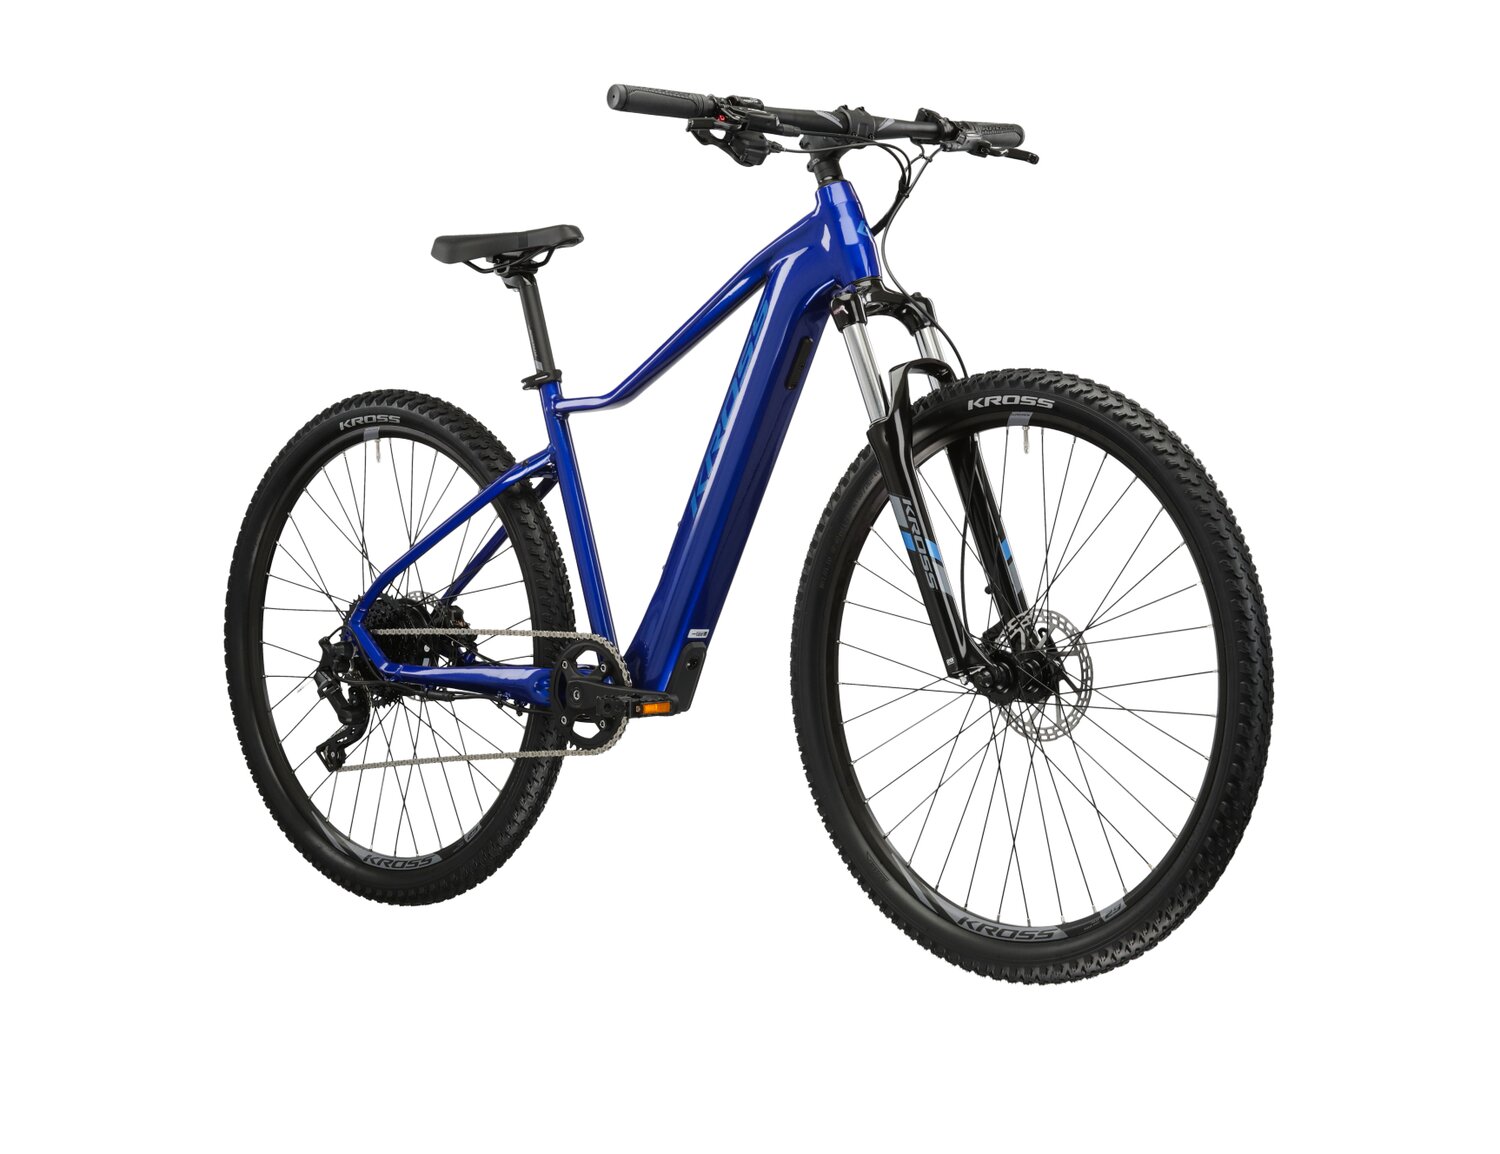 Elektryczny damski rower górski Ebike MTB Woman KROSS Lea Boost 2.0 349 WH na aluminiowej ramie w kolorze niebieskim wyposażony w osprzęt Microshift i napęd elektryczny Hyena 